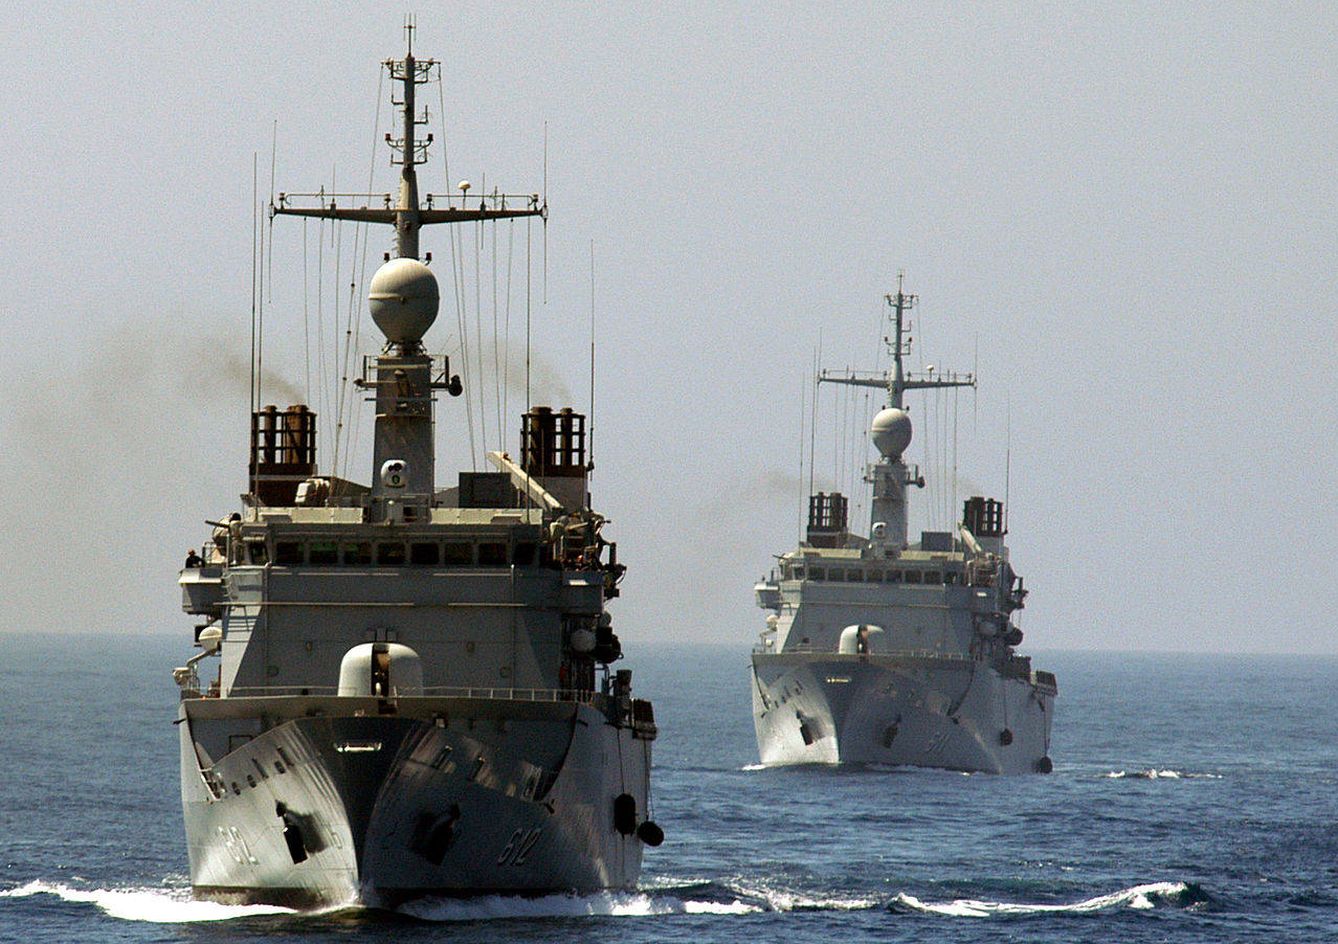 Fragatas clase Floréal de fabricación francesa en poder de la armada marroquí.